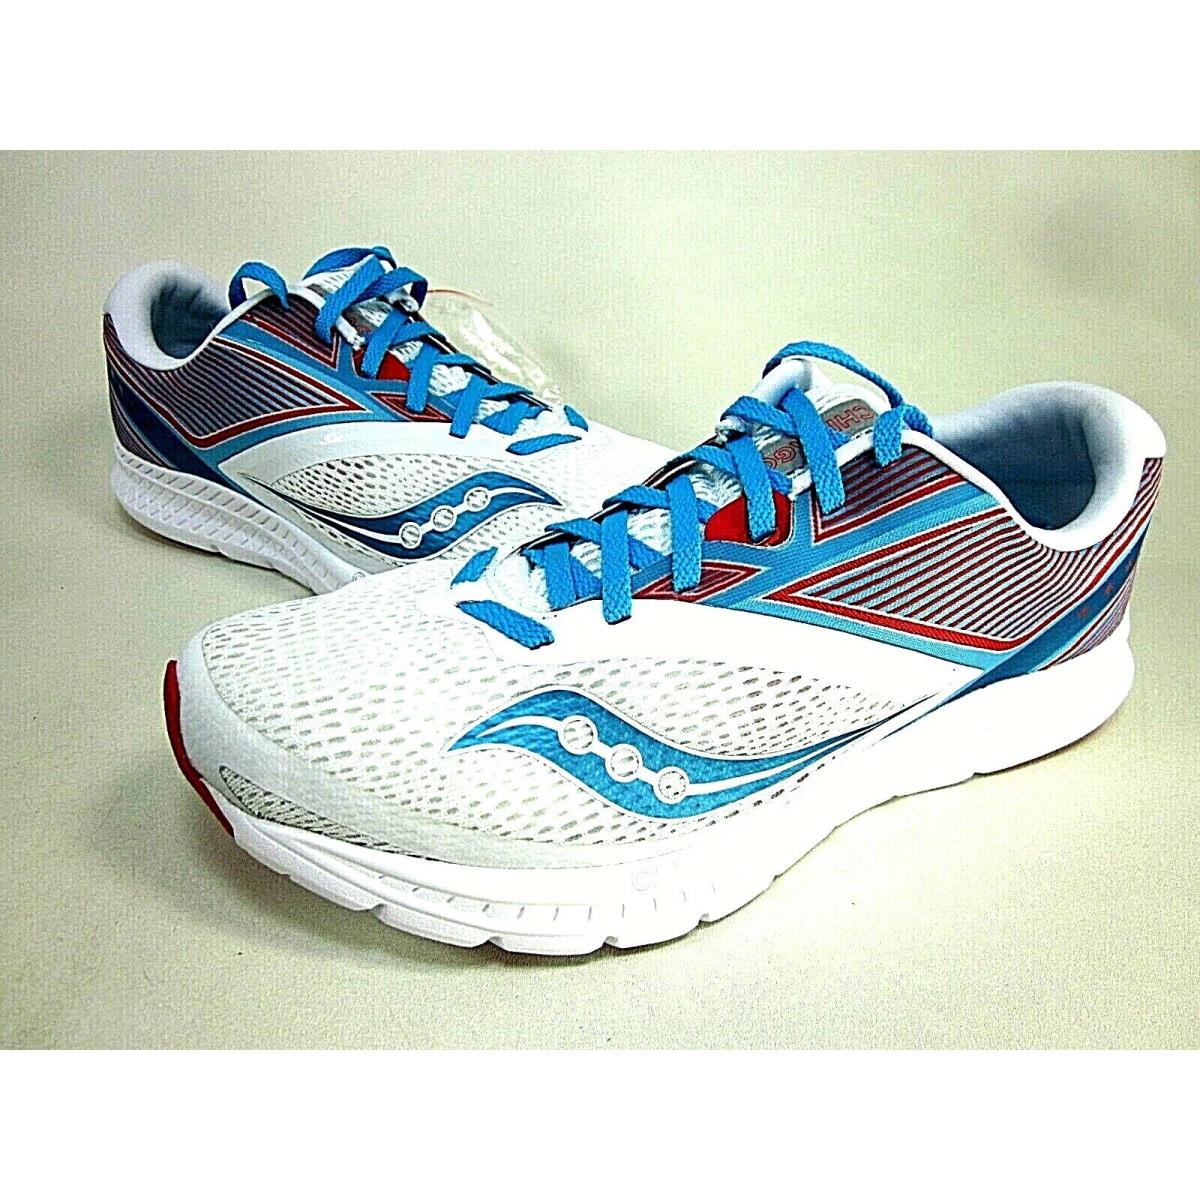 Saucony Men`s Kinvara 9 Running Shoe White/blue S20418-21 Size 7 12.5 15